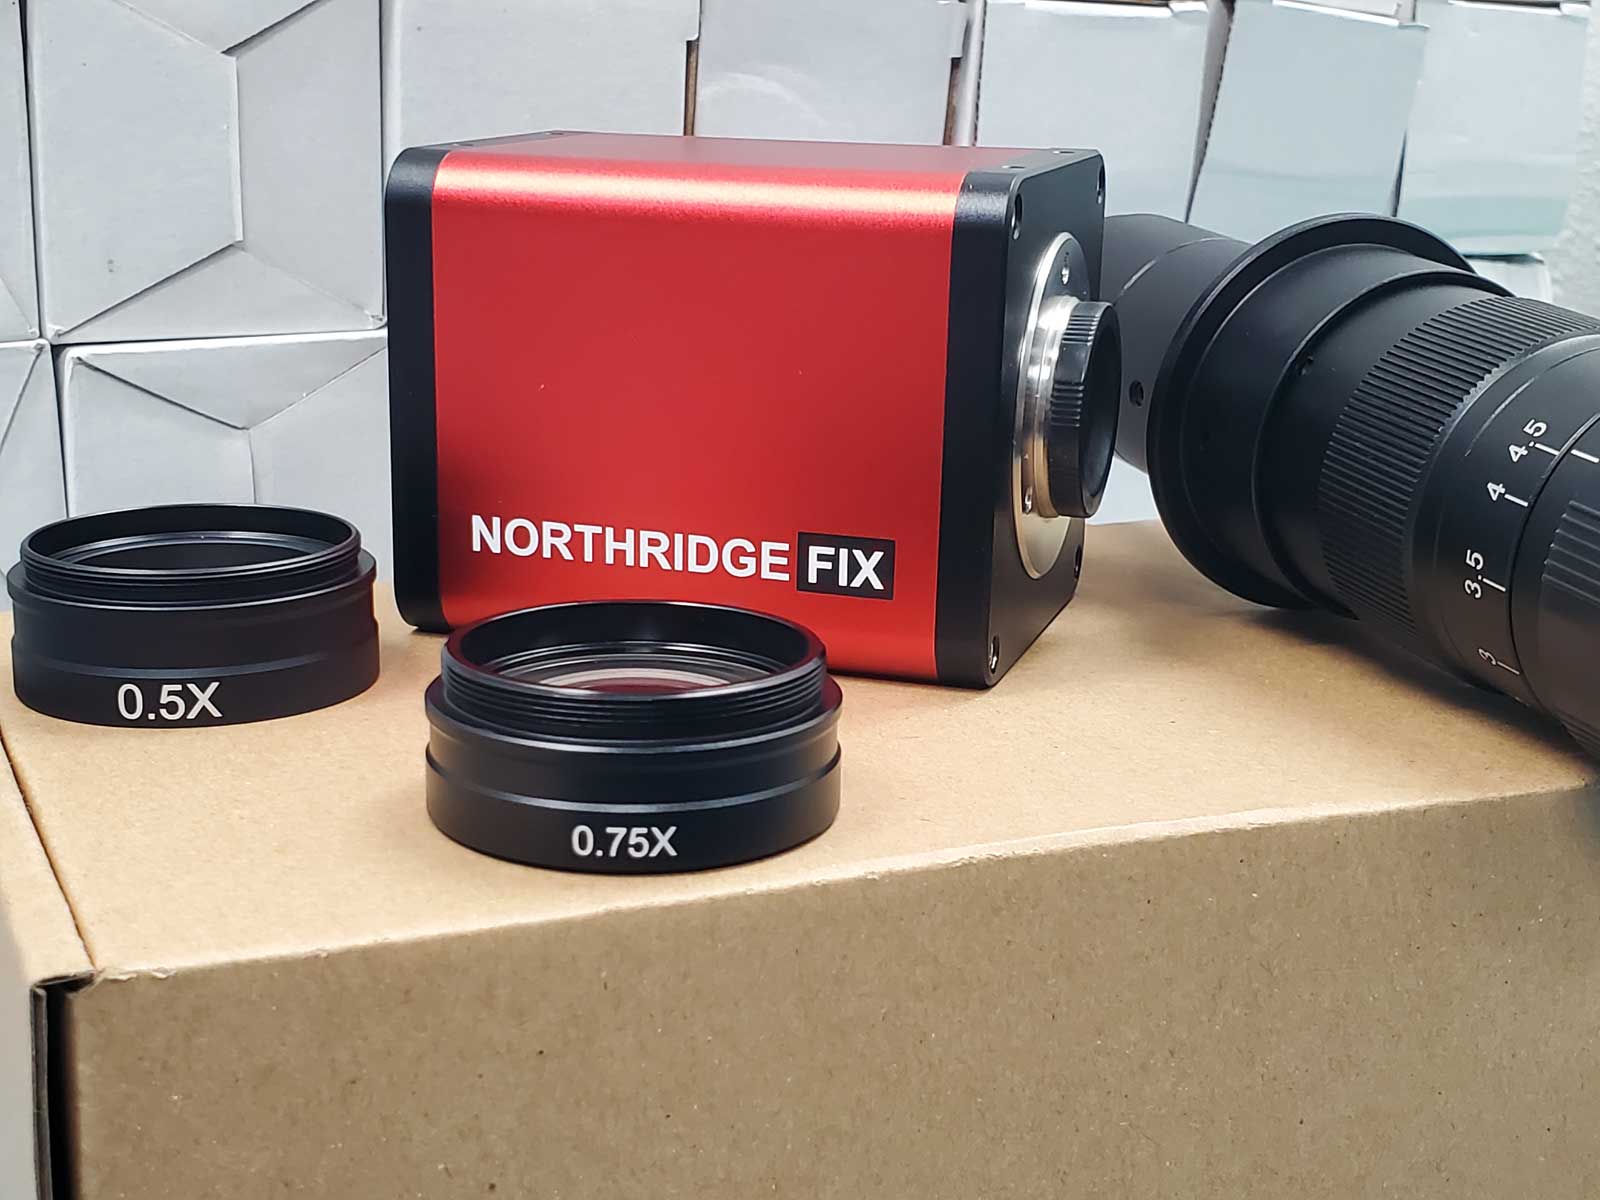 NorthridgeFix Microscope + Lenses - NEW